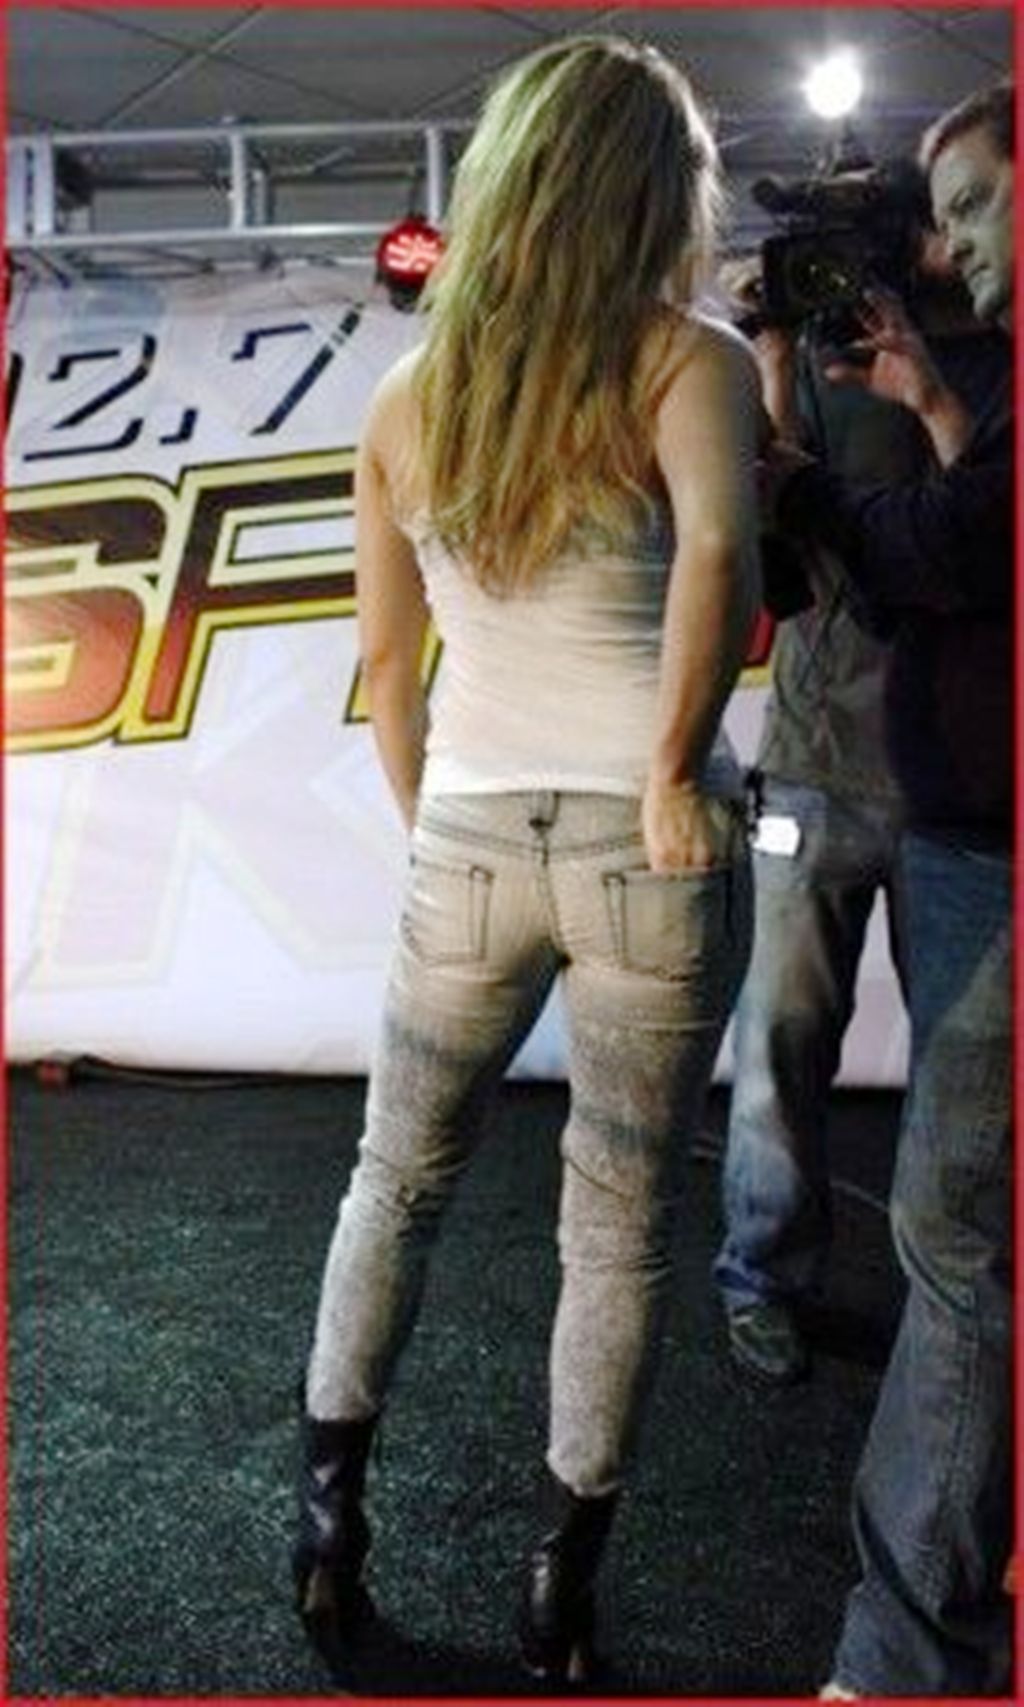 SHAKIRA JEANS ASS - Shakira Photo (13402729) - Fanpop - Page 4